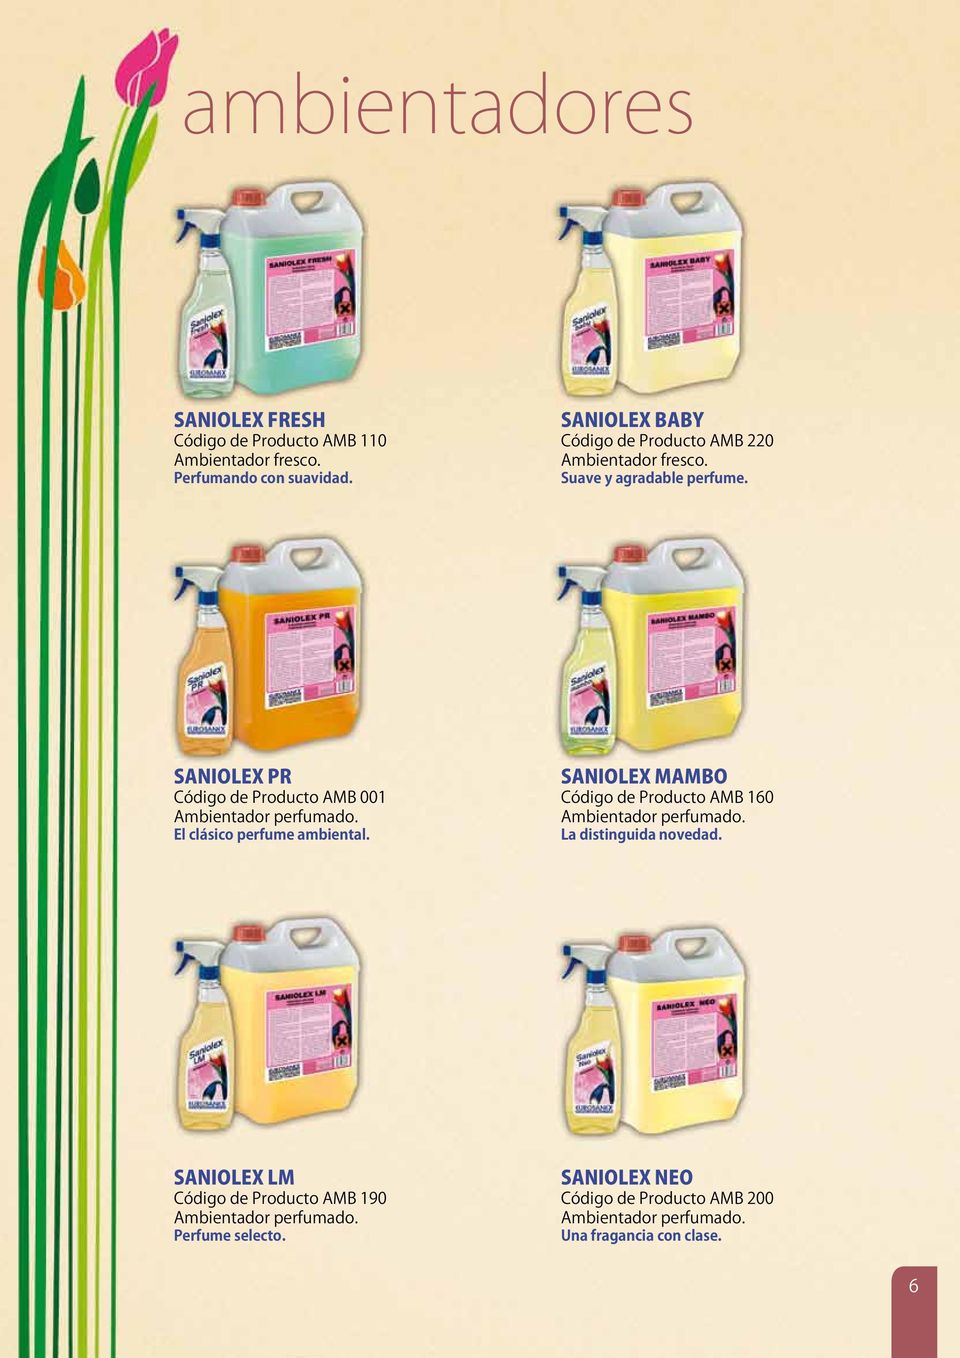 SANIOLEX PR Código de Producto AMB 001 Ambientador perfumado. El clásico perfume ambiental.